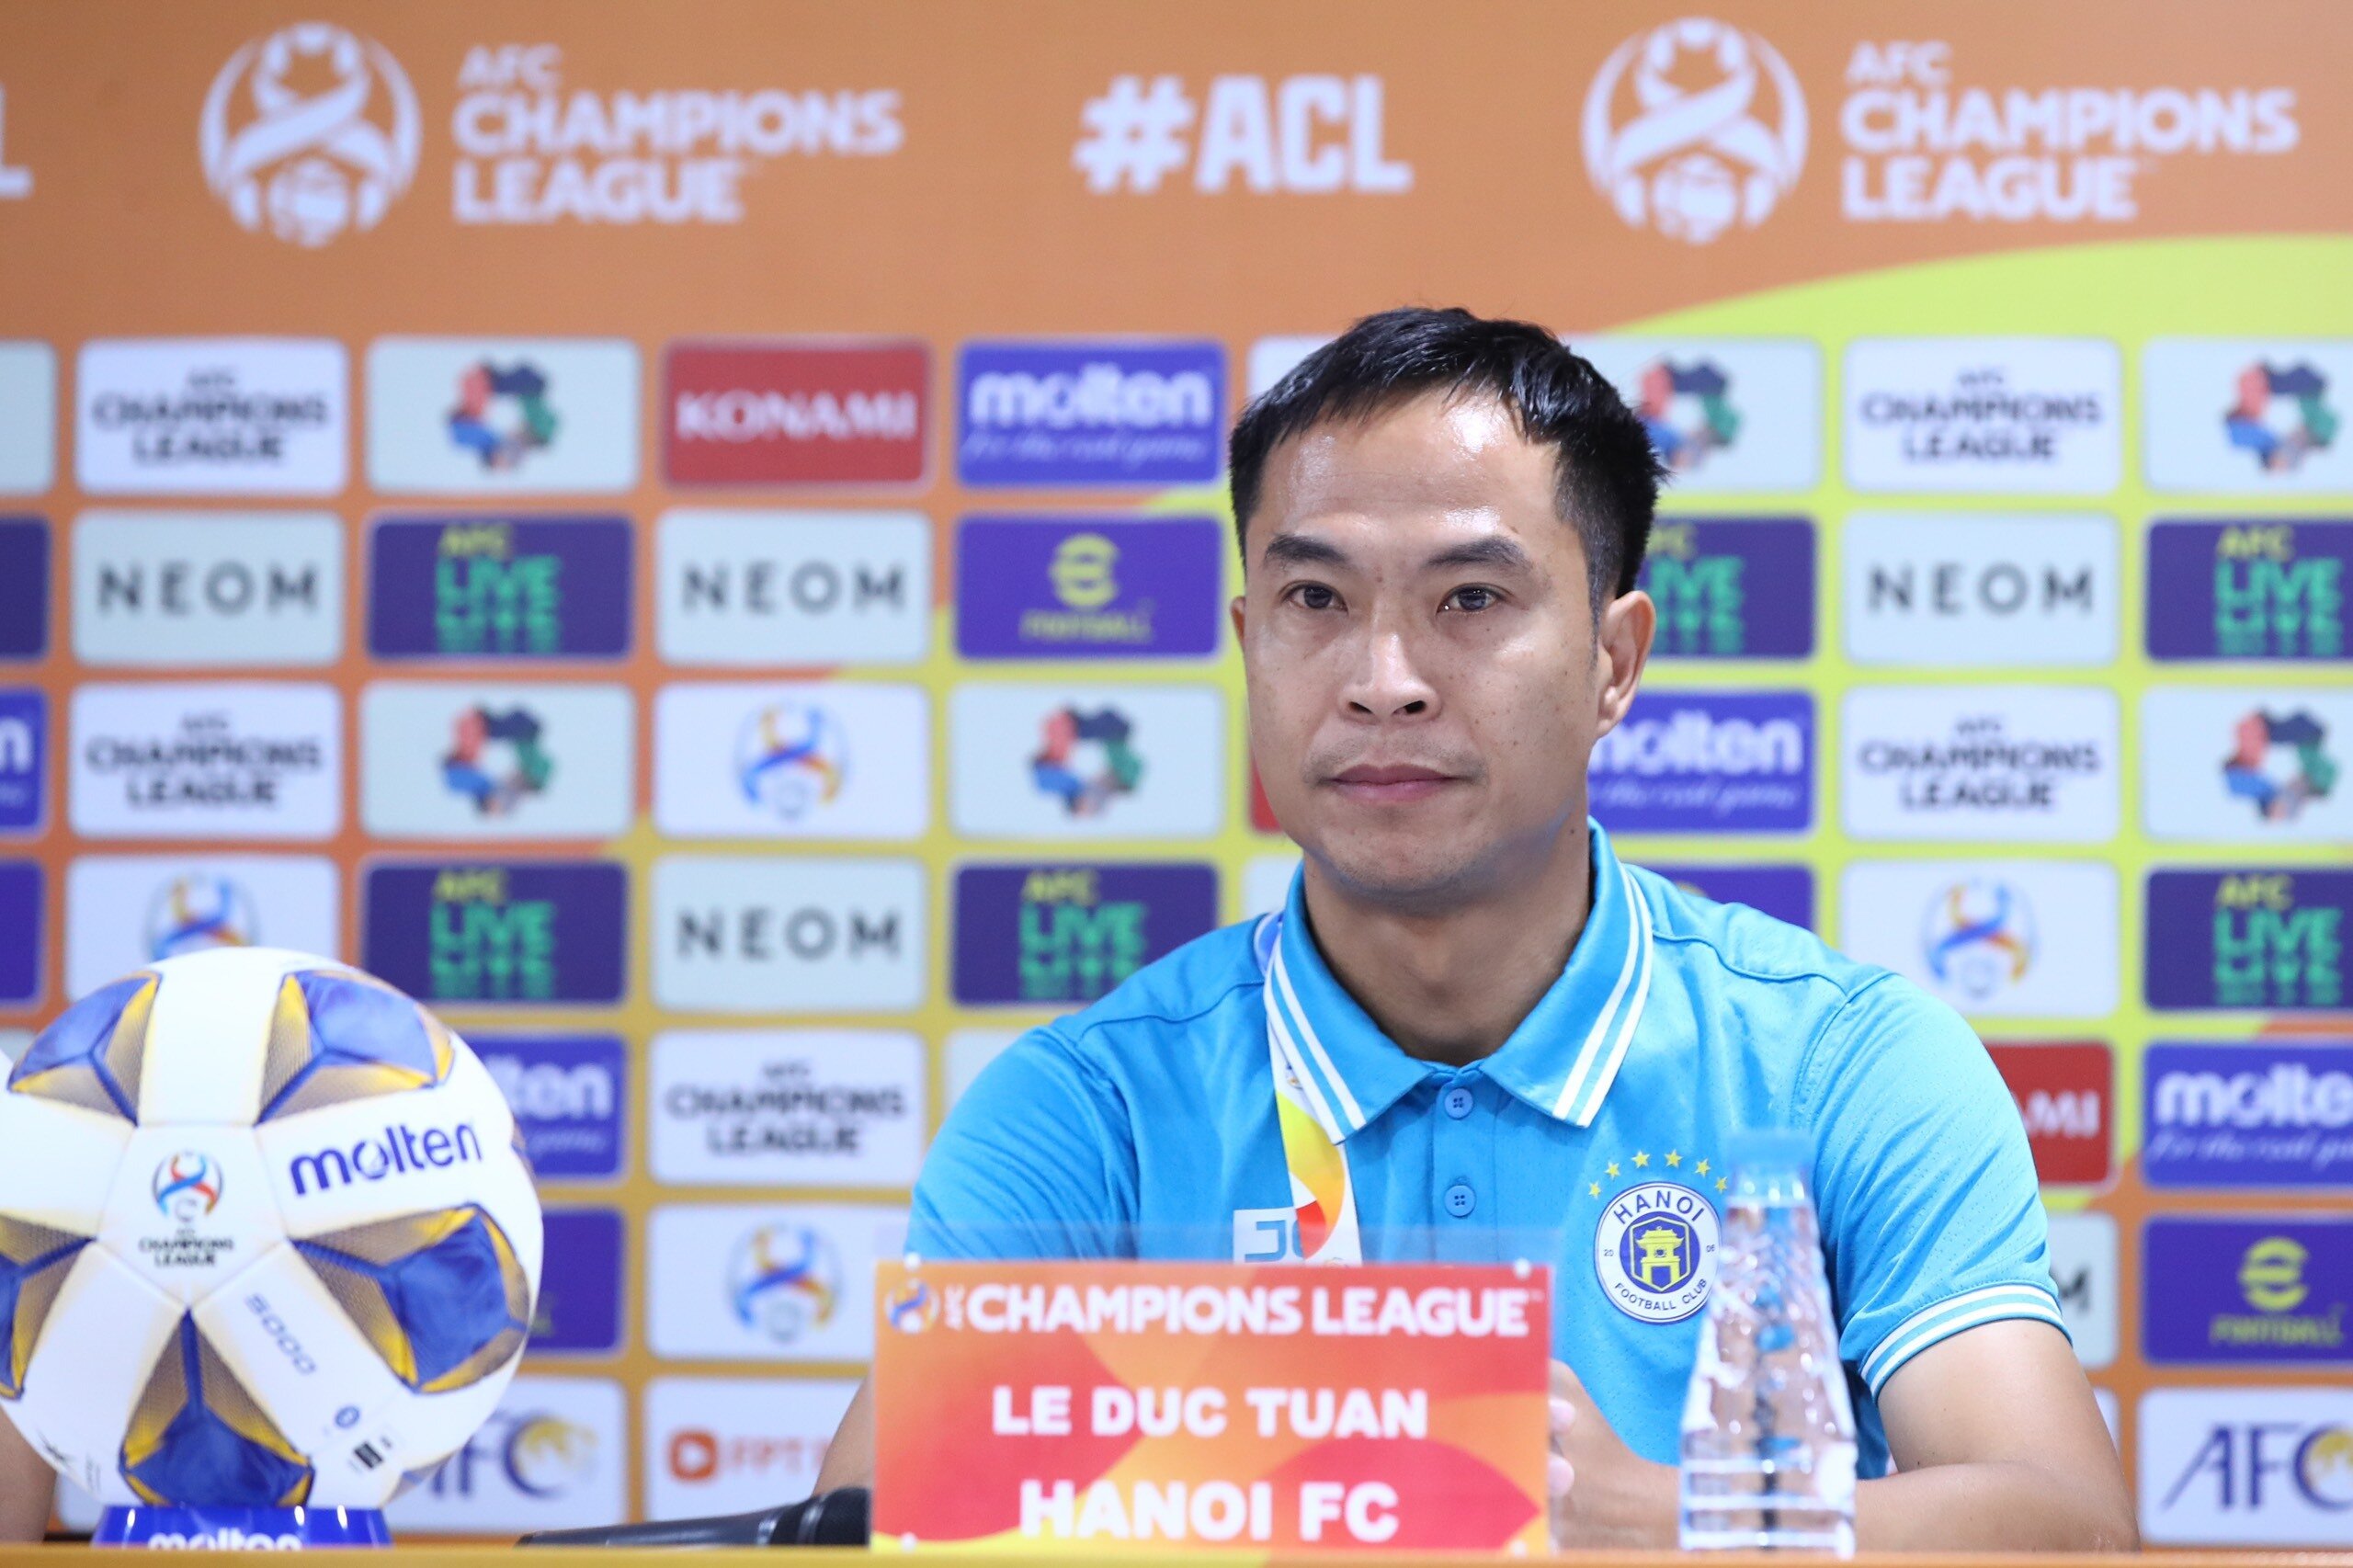 HLV Lê Đức Tuấn bày tỏ niềm vui với chiến thắng của Hà Nội FC.